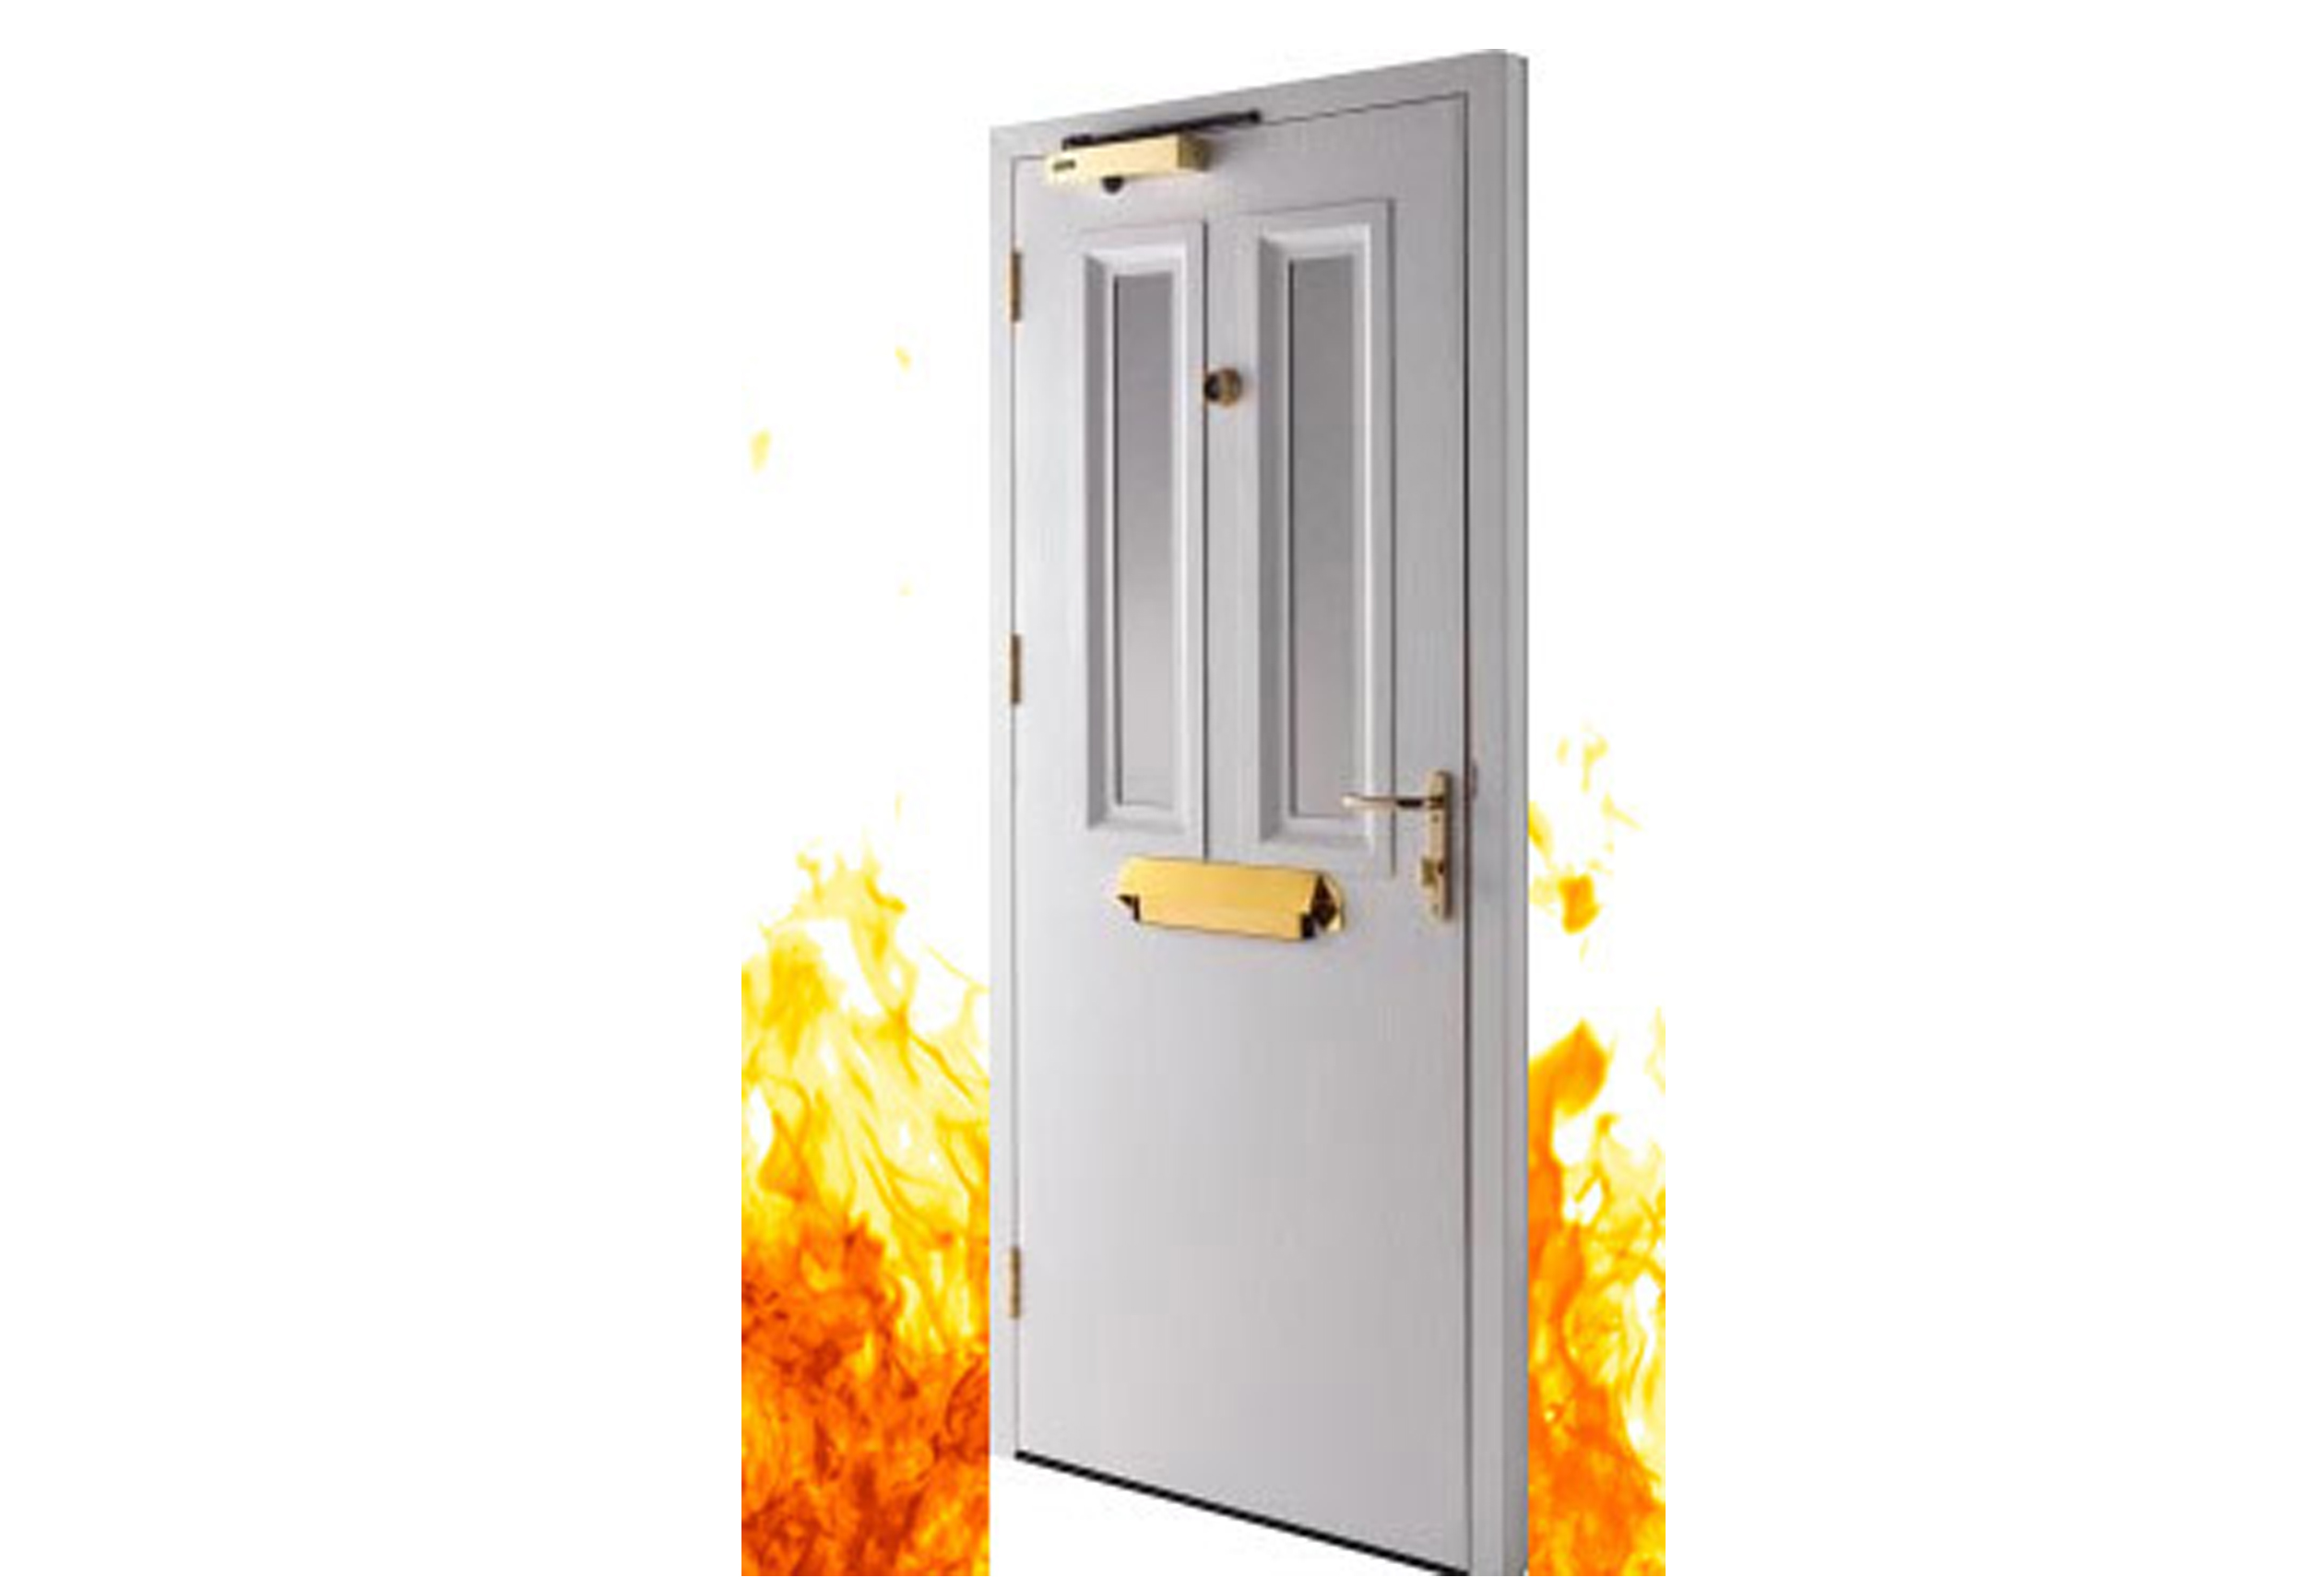 Nên sử dụng cửa chống cháy để đảm bảo an toàn cho tính mạng và tài sản